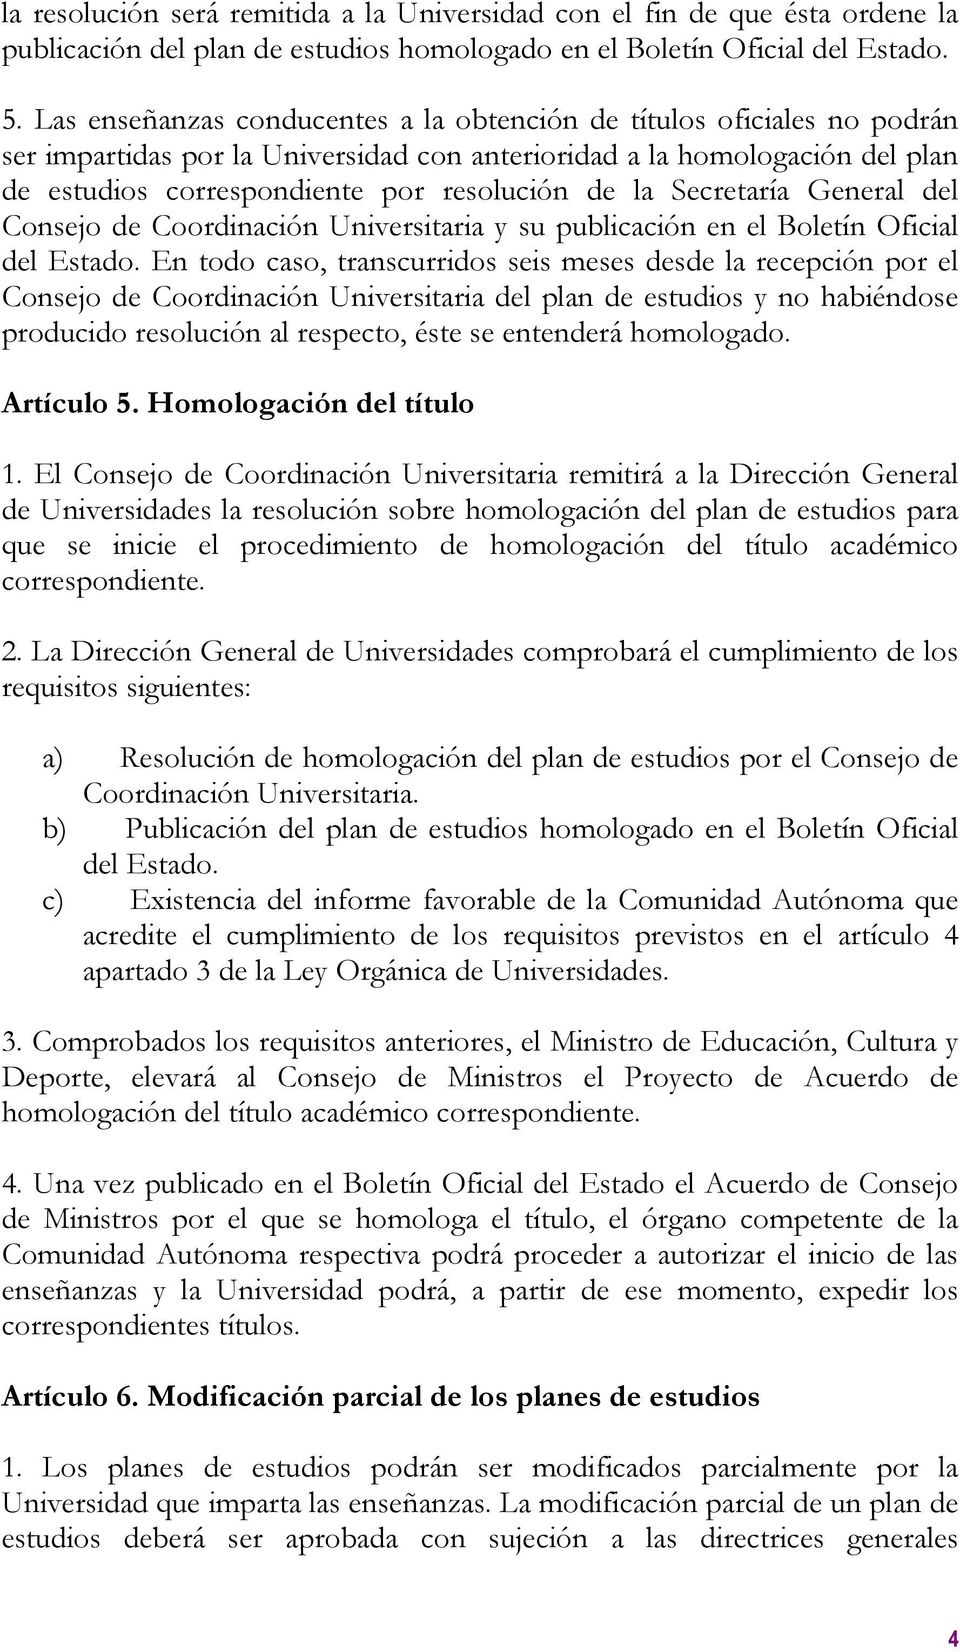 Secretaría General del Consejo de Coordinación Universitaria y su publicación en el Boletín Oficial del Estado.